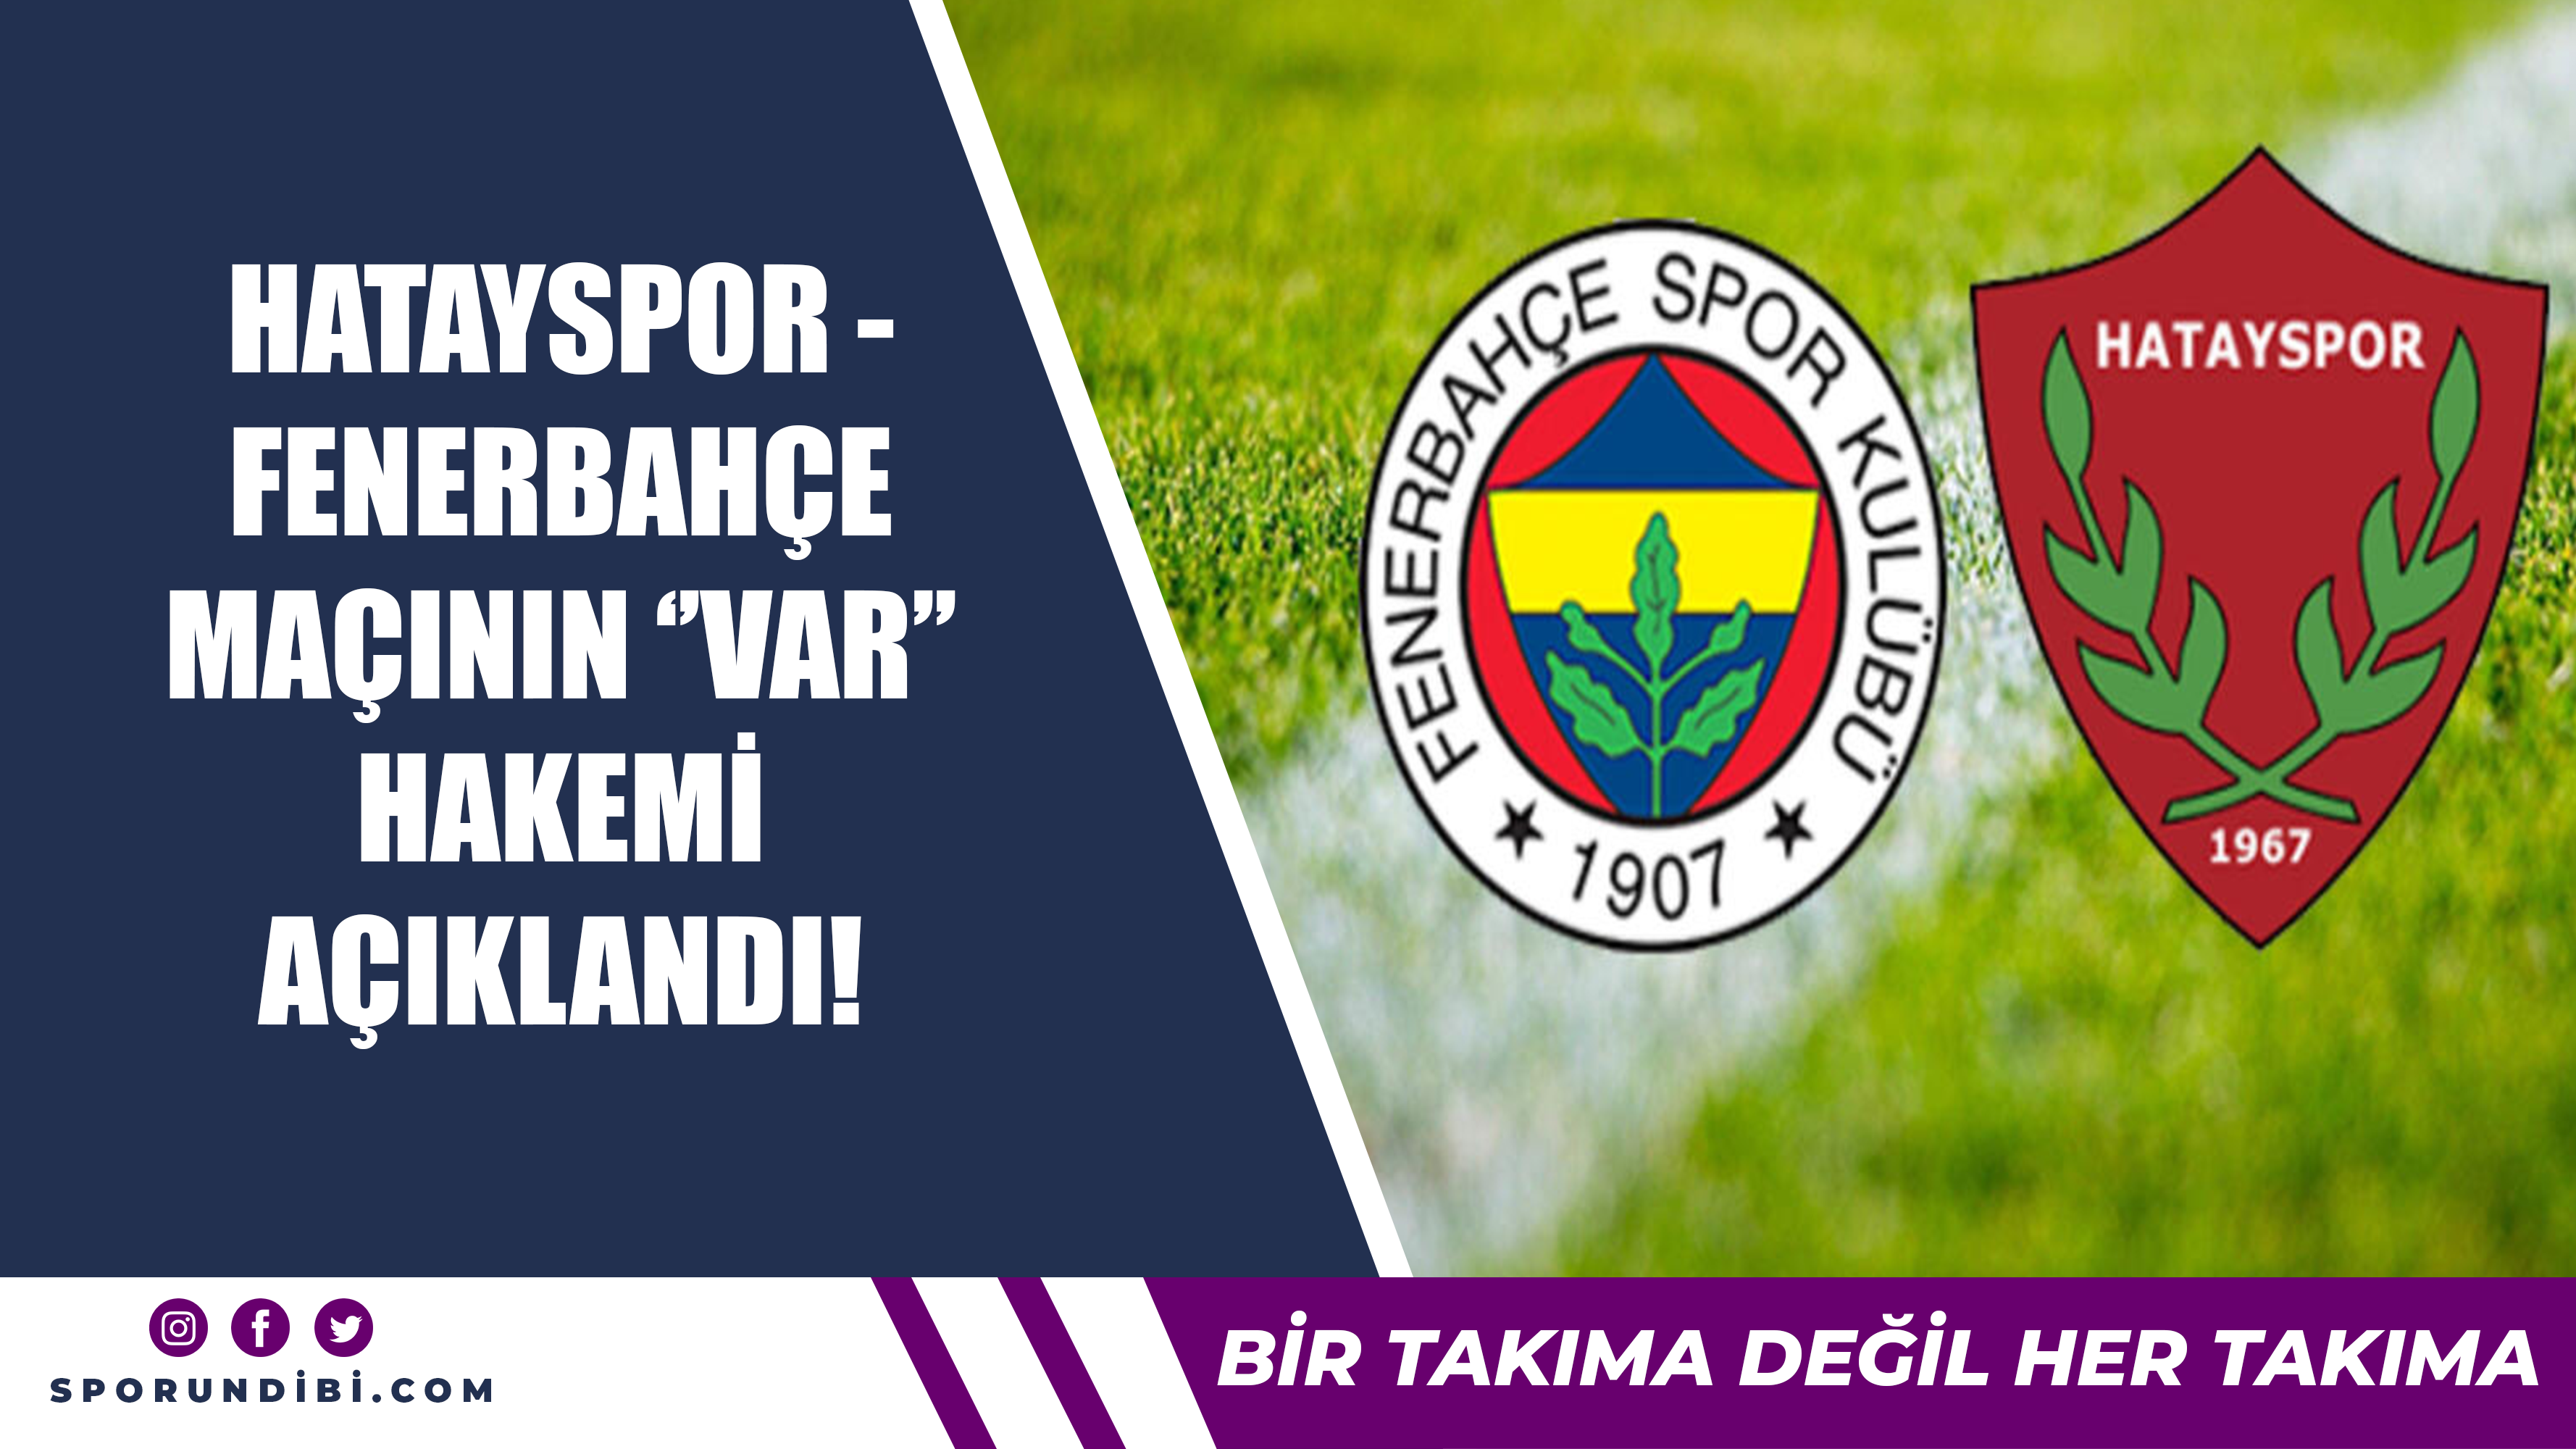 Hatayspor - Fenerbahçe maçının ''VAR'' hakemi açıklandı!